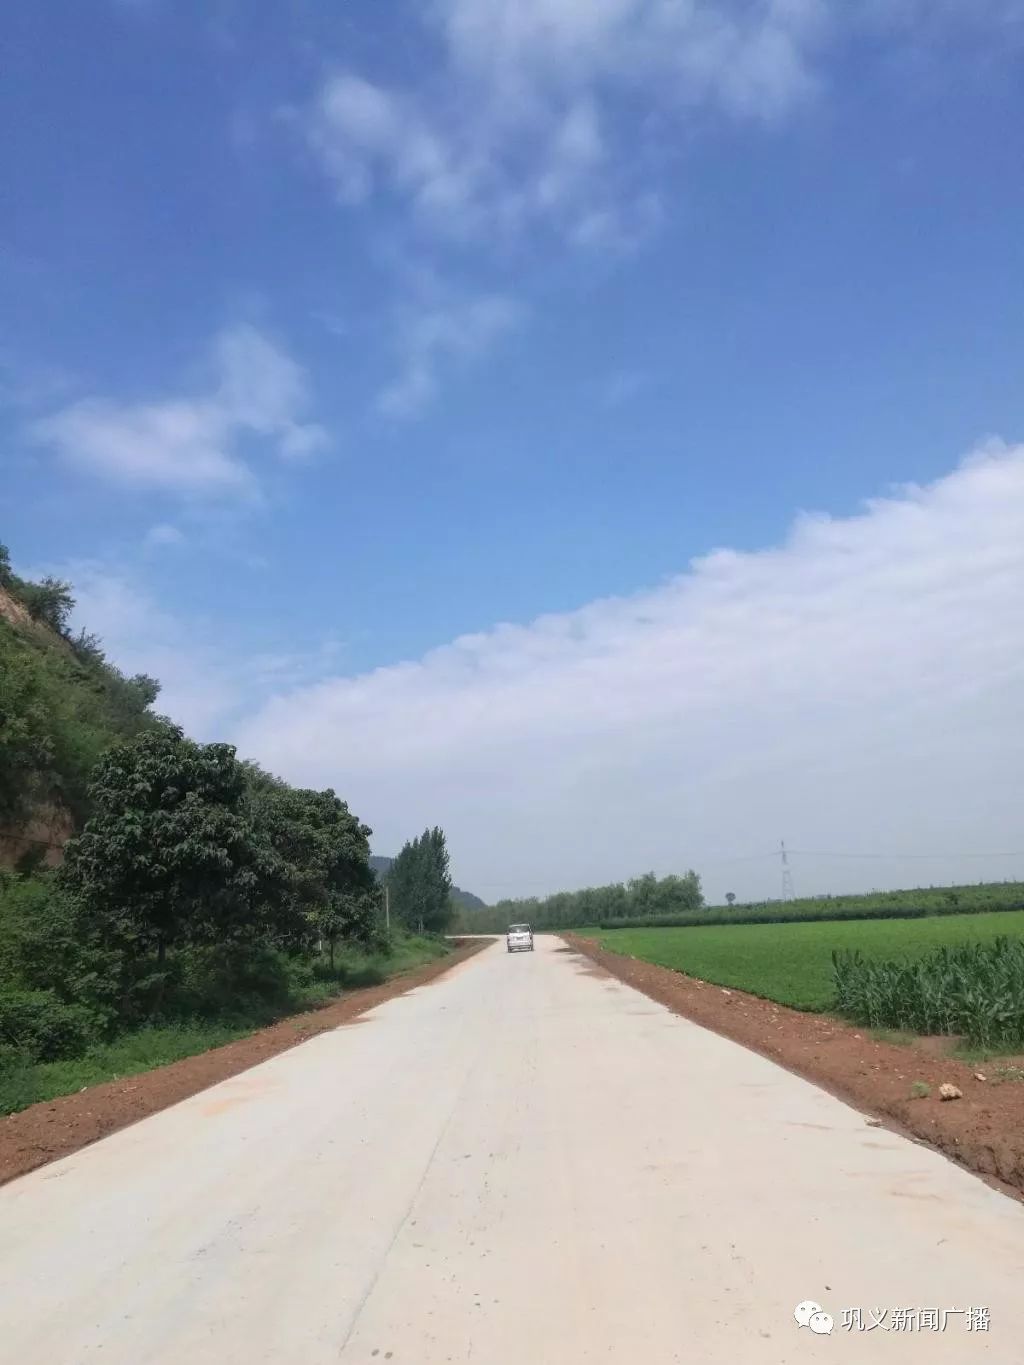 国道310,陇海路西延巩义…2019年,巩义交通将迎来